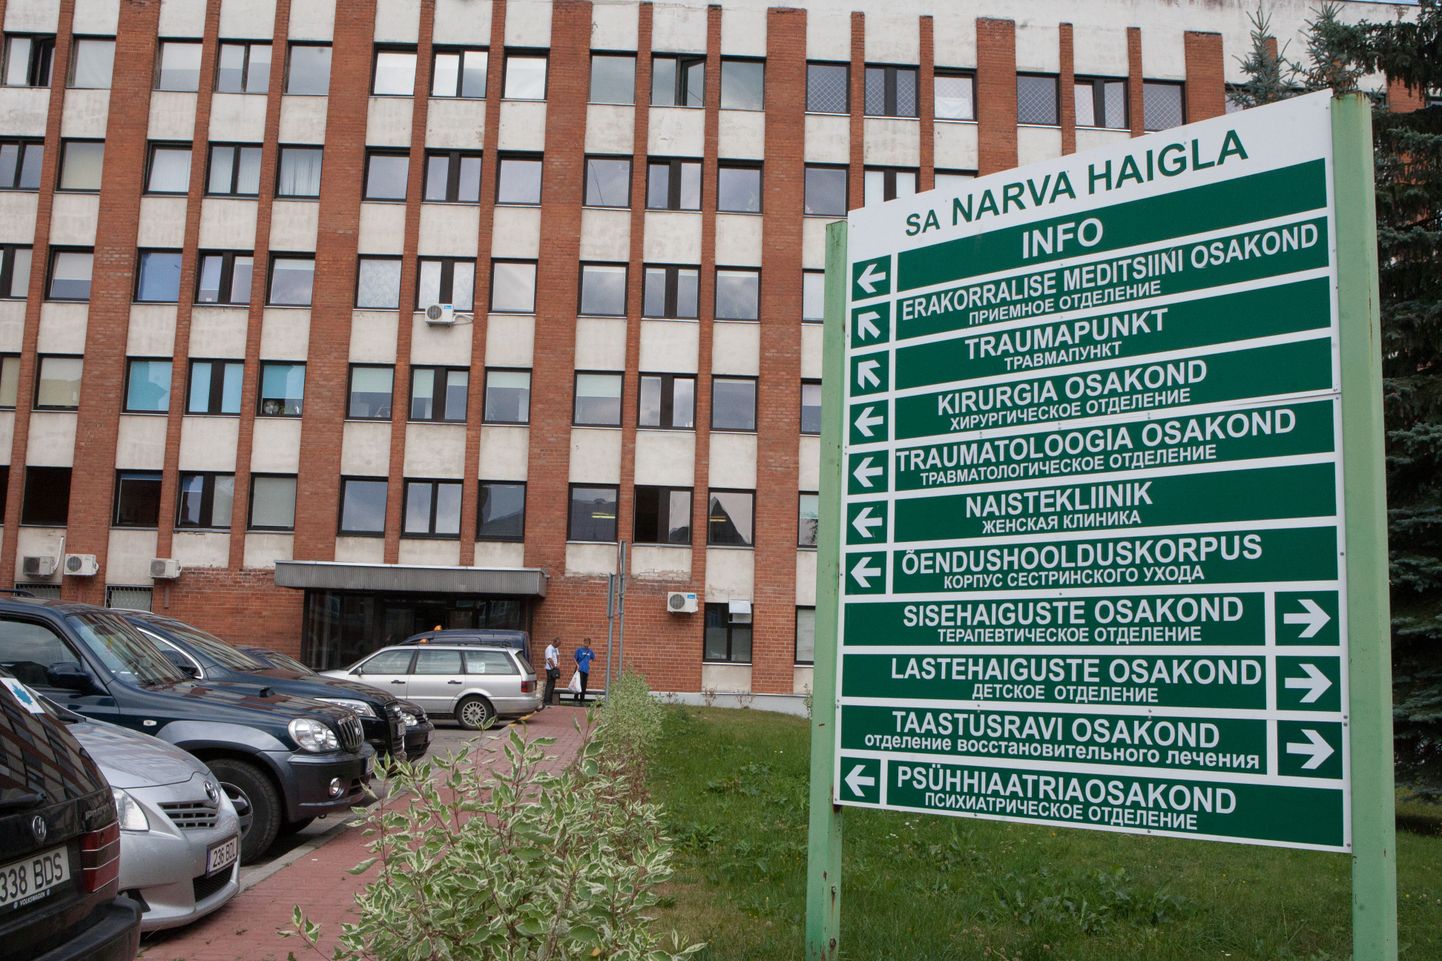 Narva haigla.